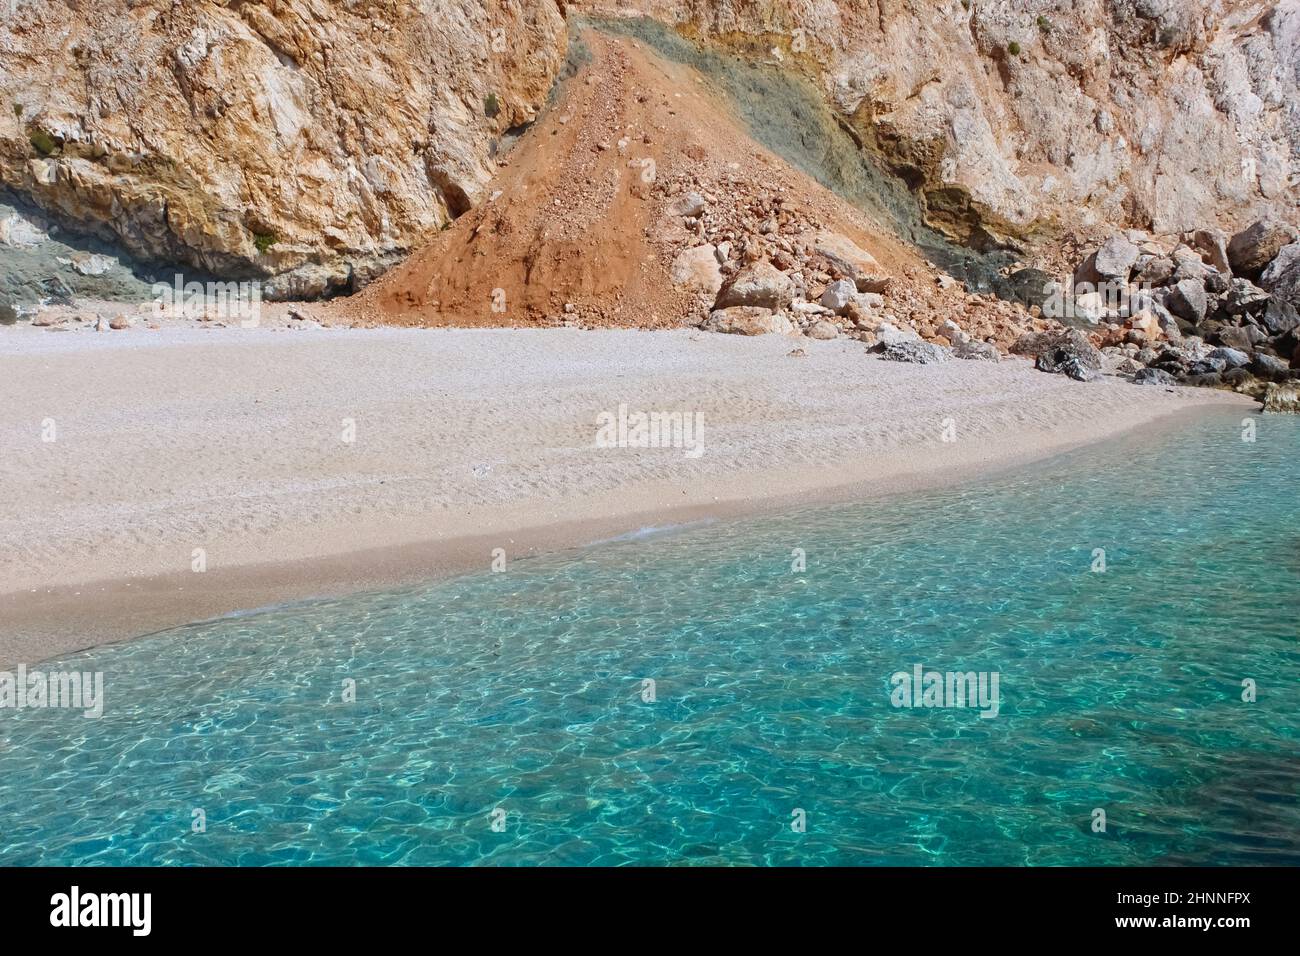 Suluada es una isla solitaria en la costa sur de Turquía. El viaje en barco a la isla comienza en la bahía de Adrasan. Foto de stock